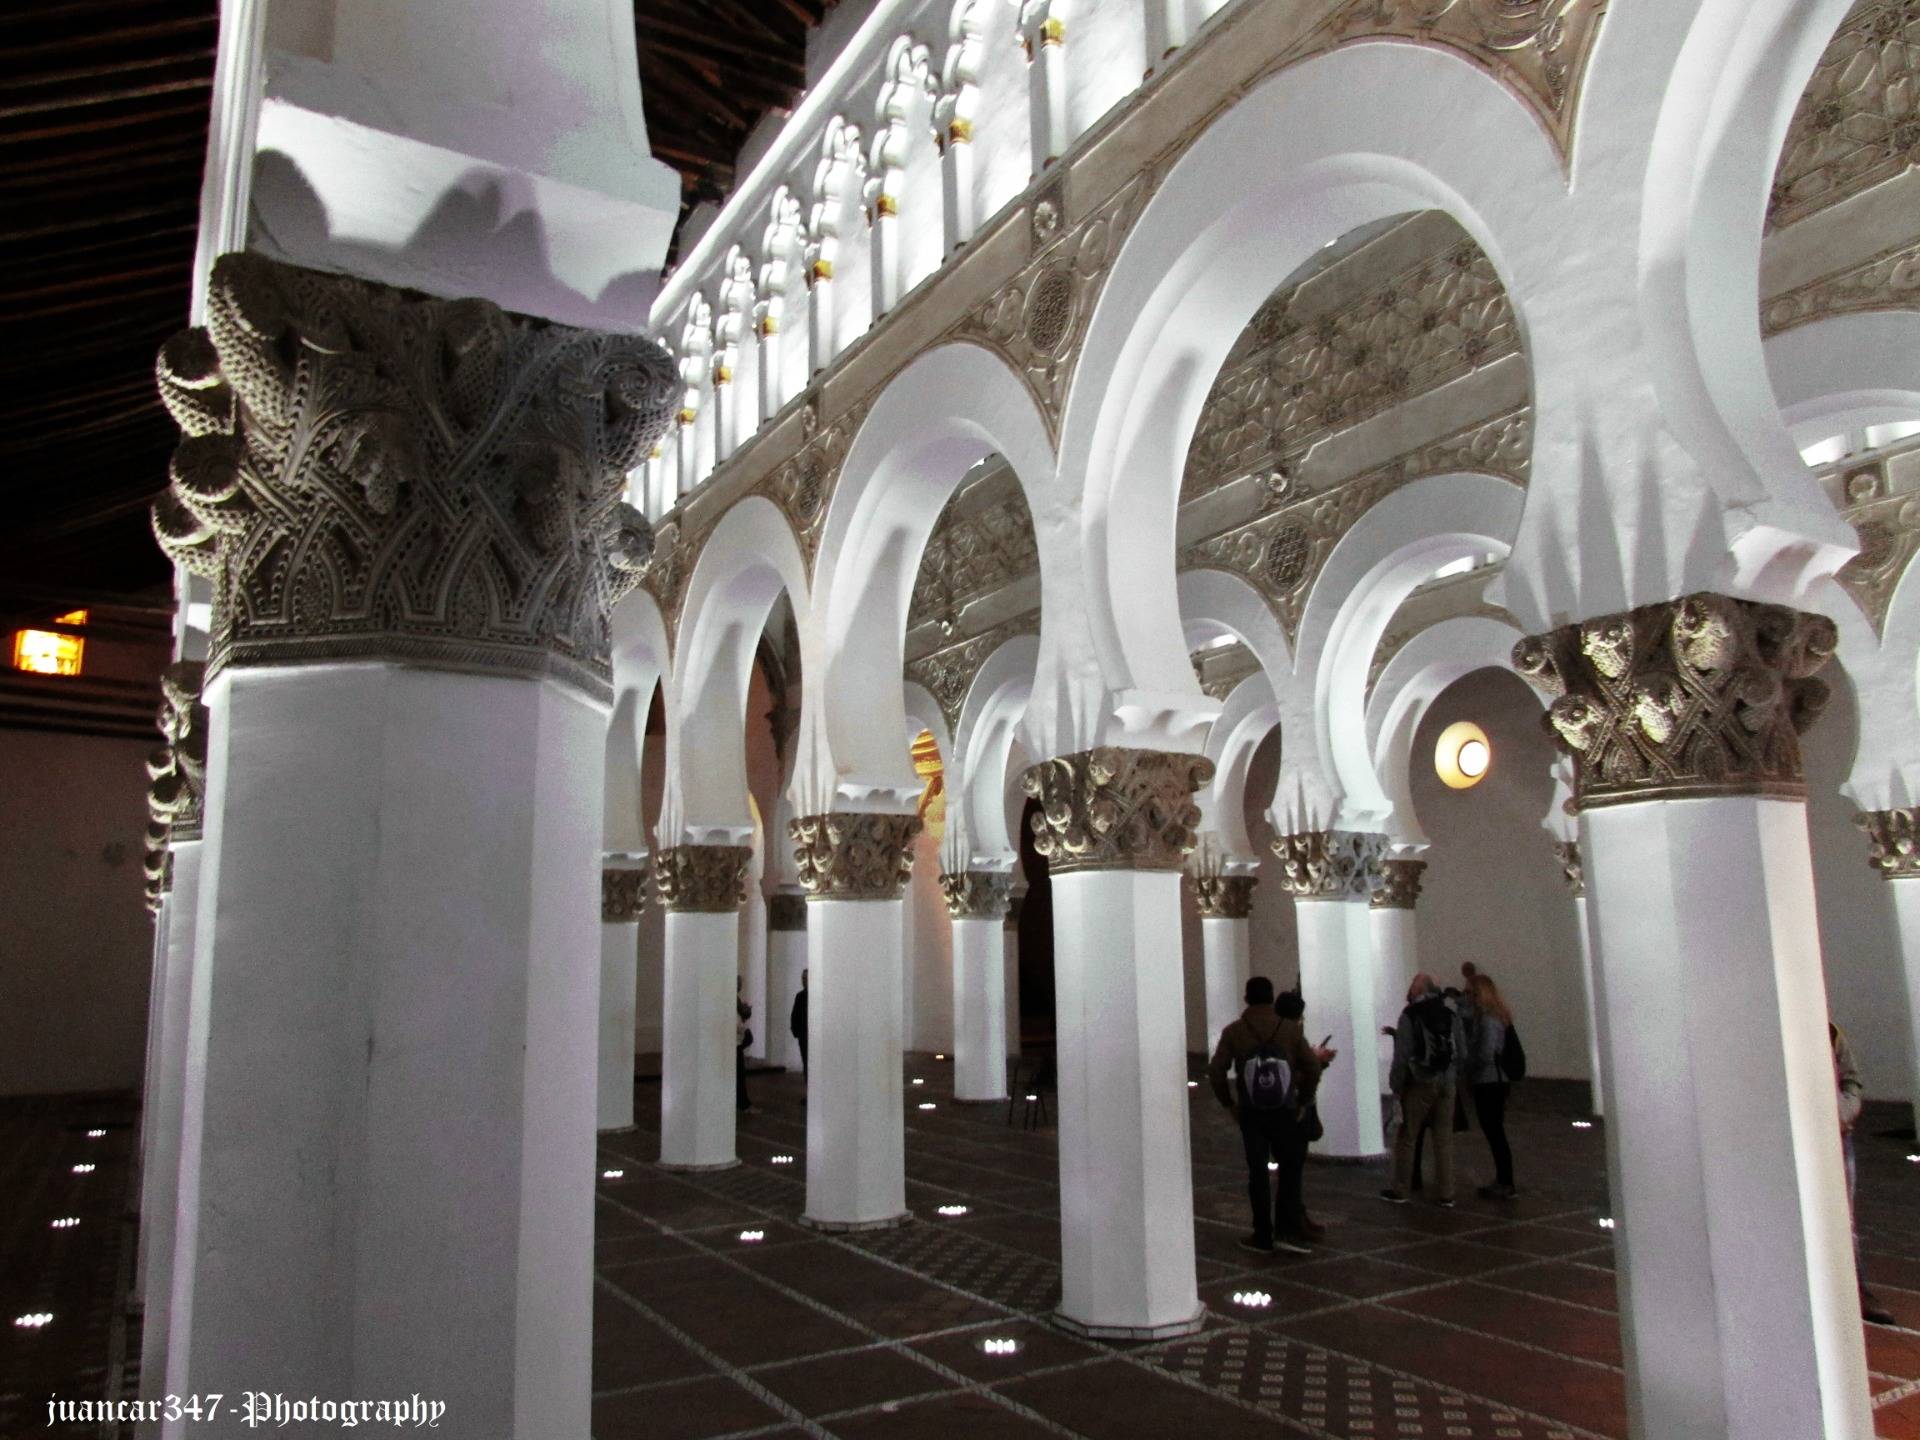 Interiors of the synagogue of Santa María la Blanca